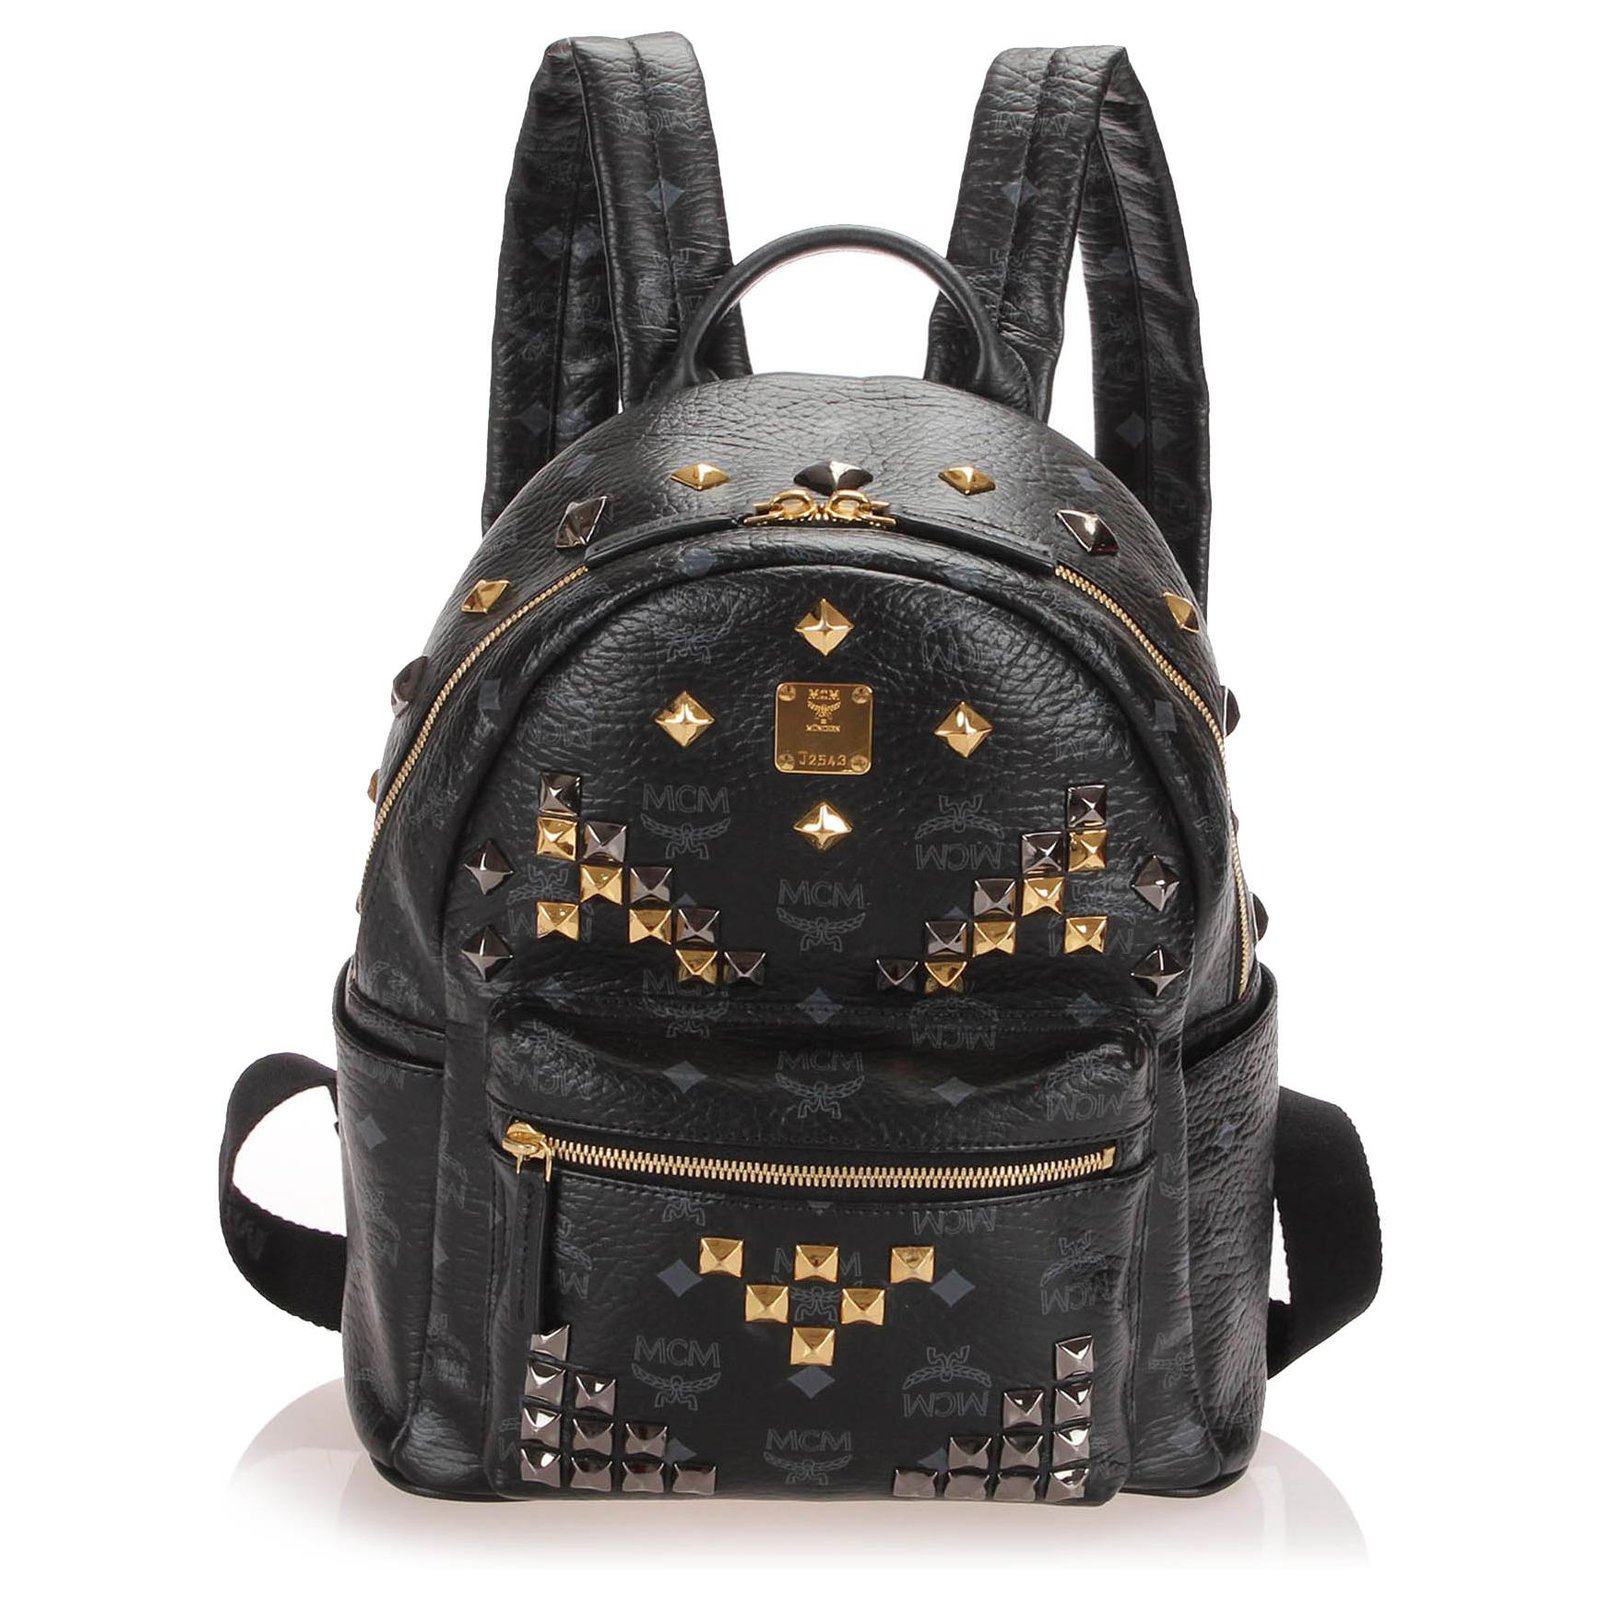 Mcm Women's Stark Backpack in Cubic Jacquard Nylon - Black - Backpacks